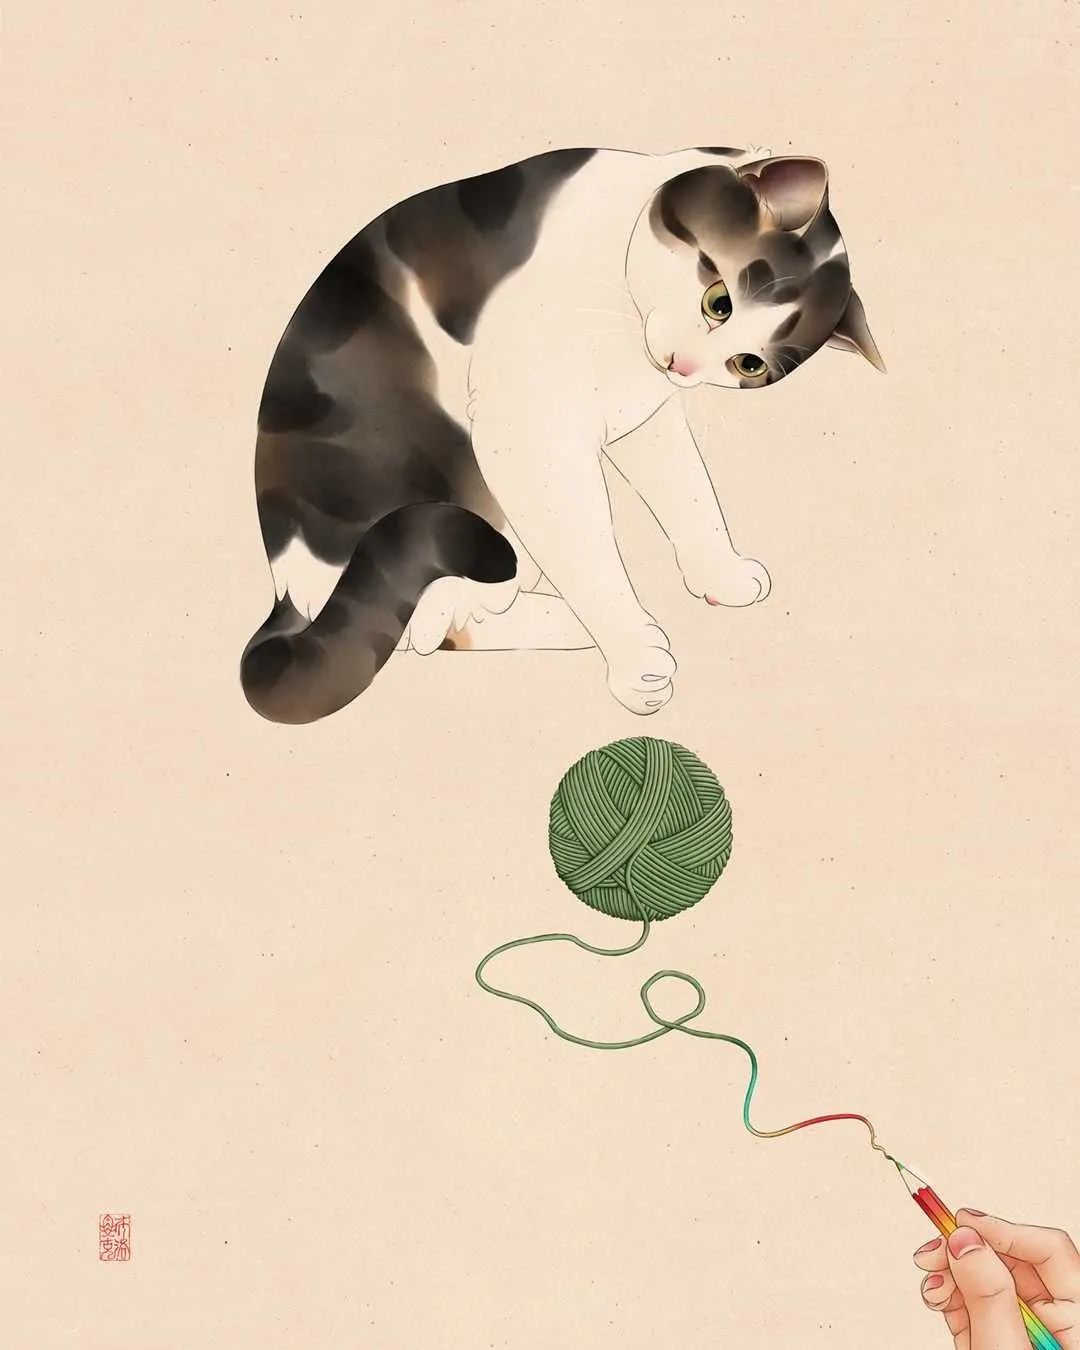 Broccoli东方韵味的可爱猫咪插画作品